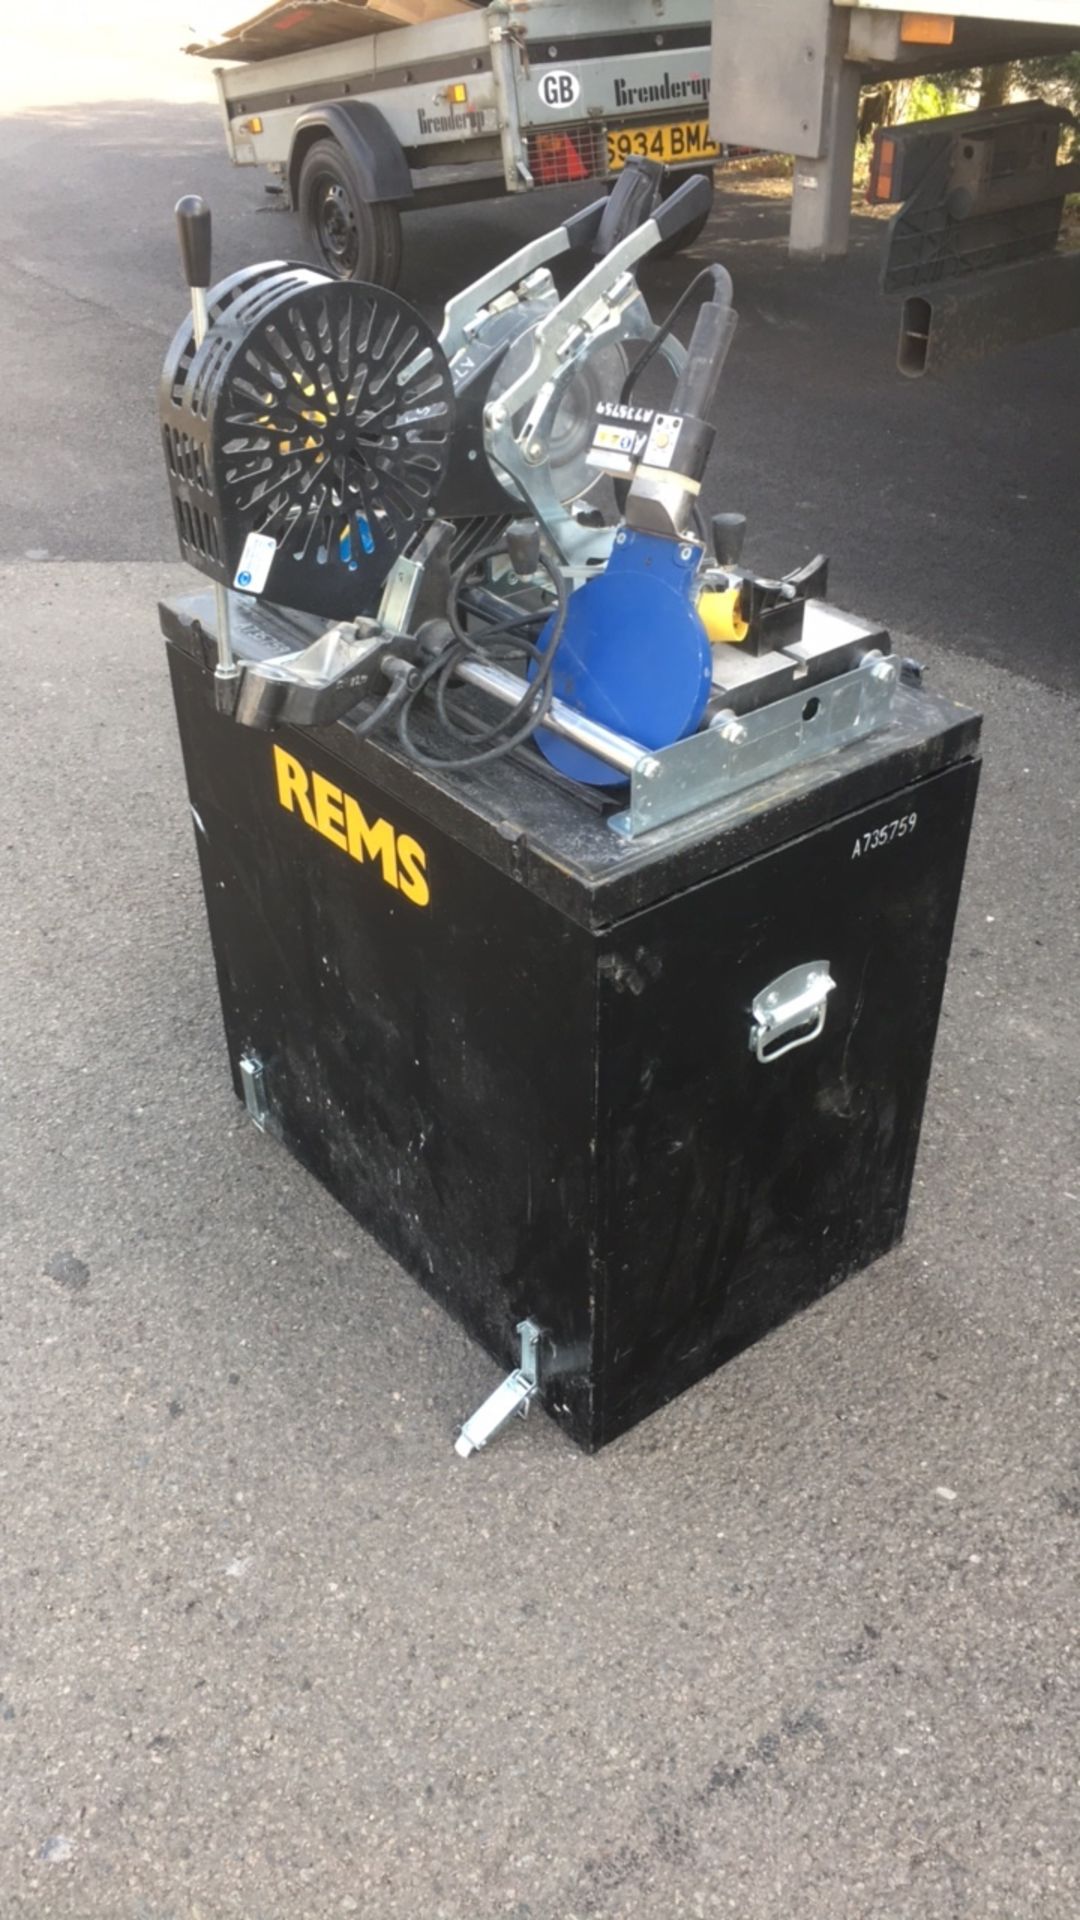 REMS SSM 160 KS butt welding machine - Image 8 of 10